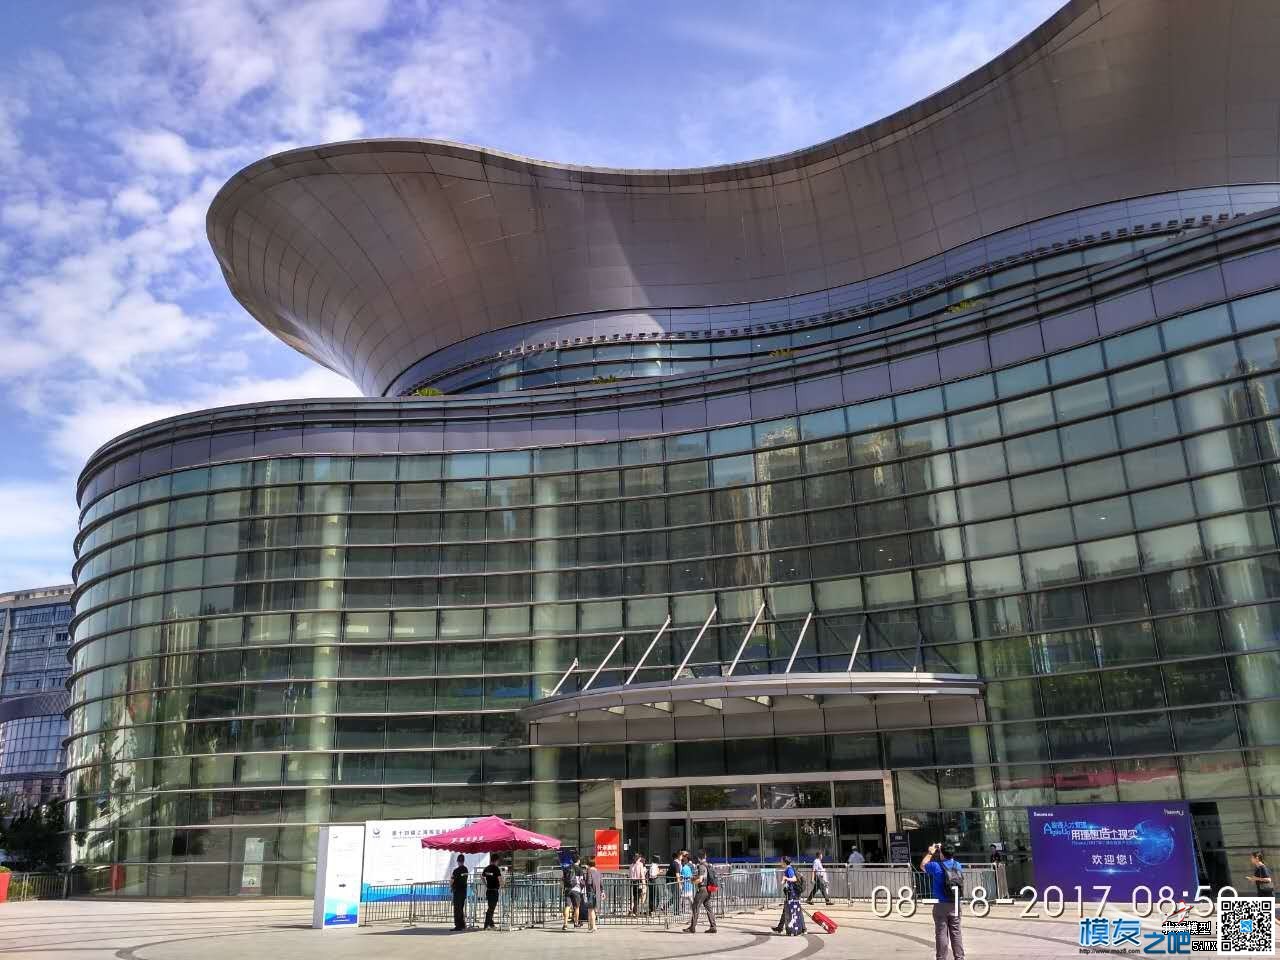 十四届上海模型展览会 - 乐迪电子直播记 无人机,穿越机,船模,模型,多旋翼 作者:乐迪support 3452 